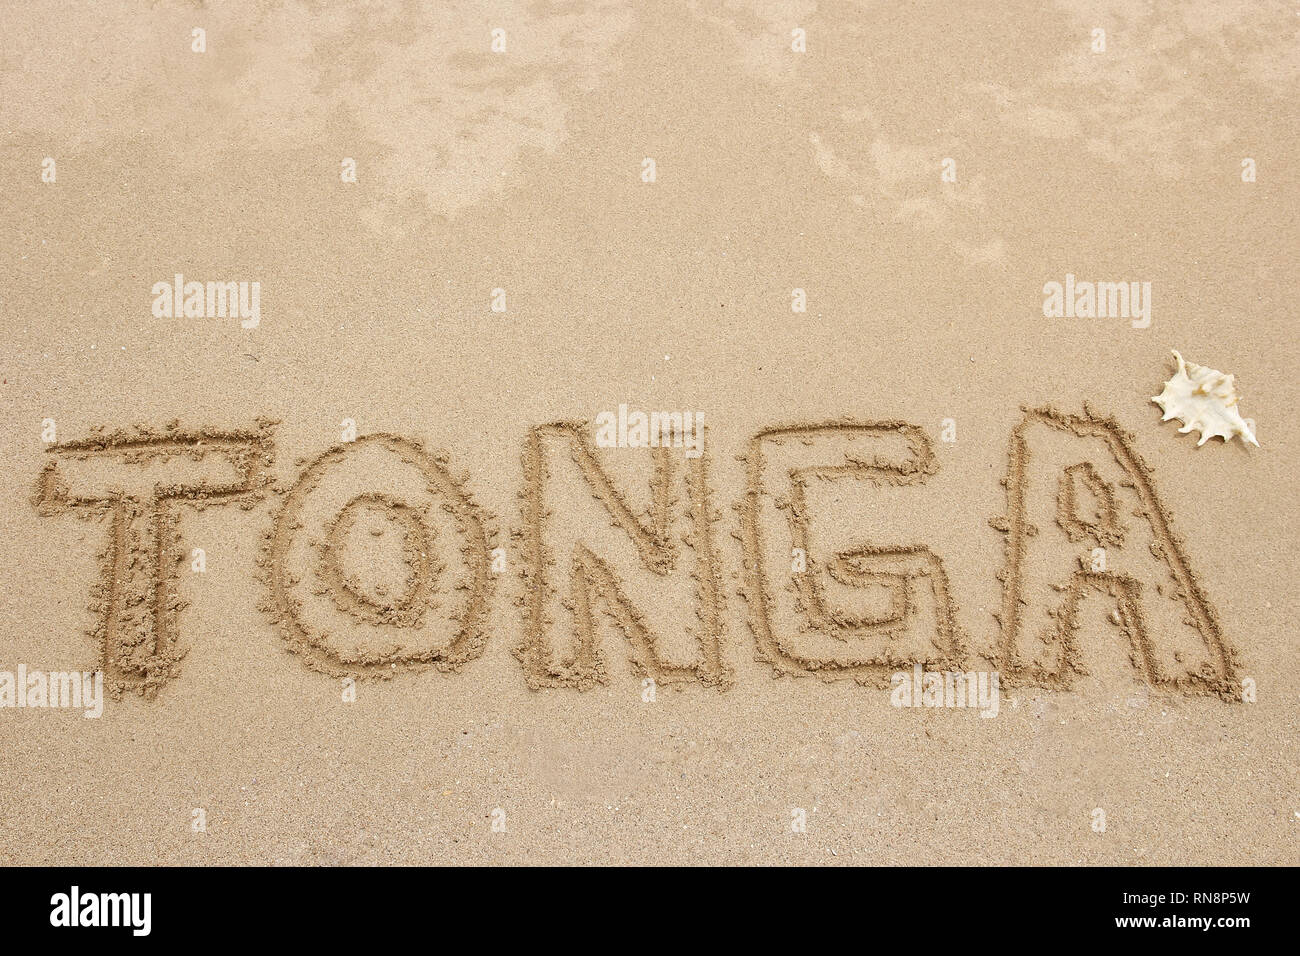 Palabra "Tonga" escrito en una arena - concepto de viaje Foto de stock